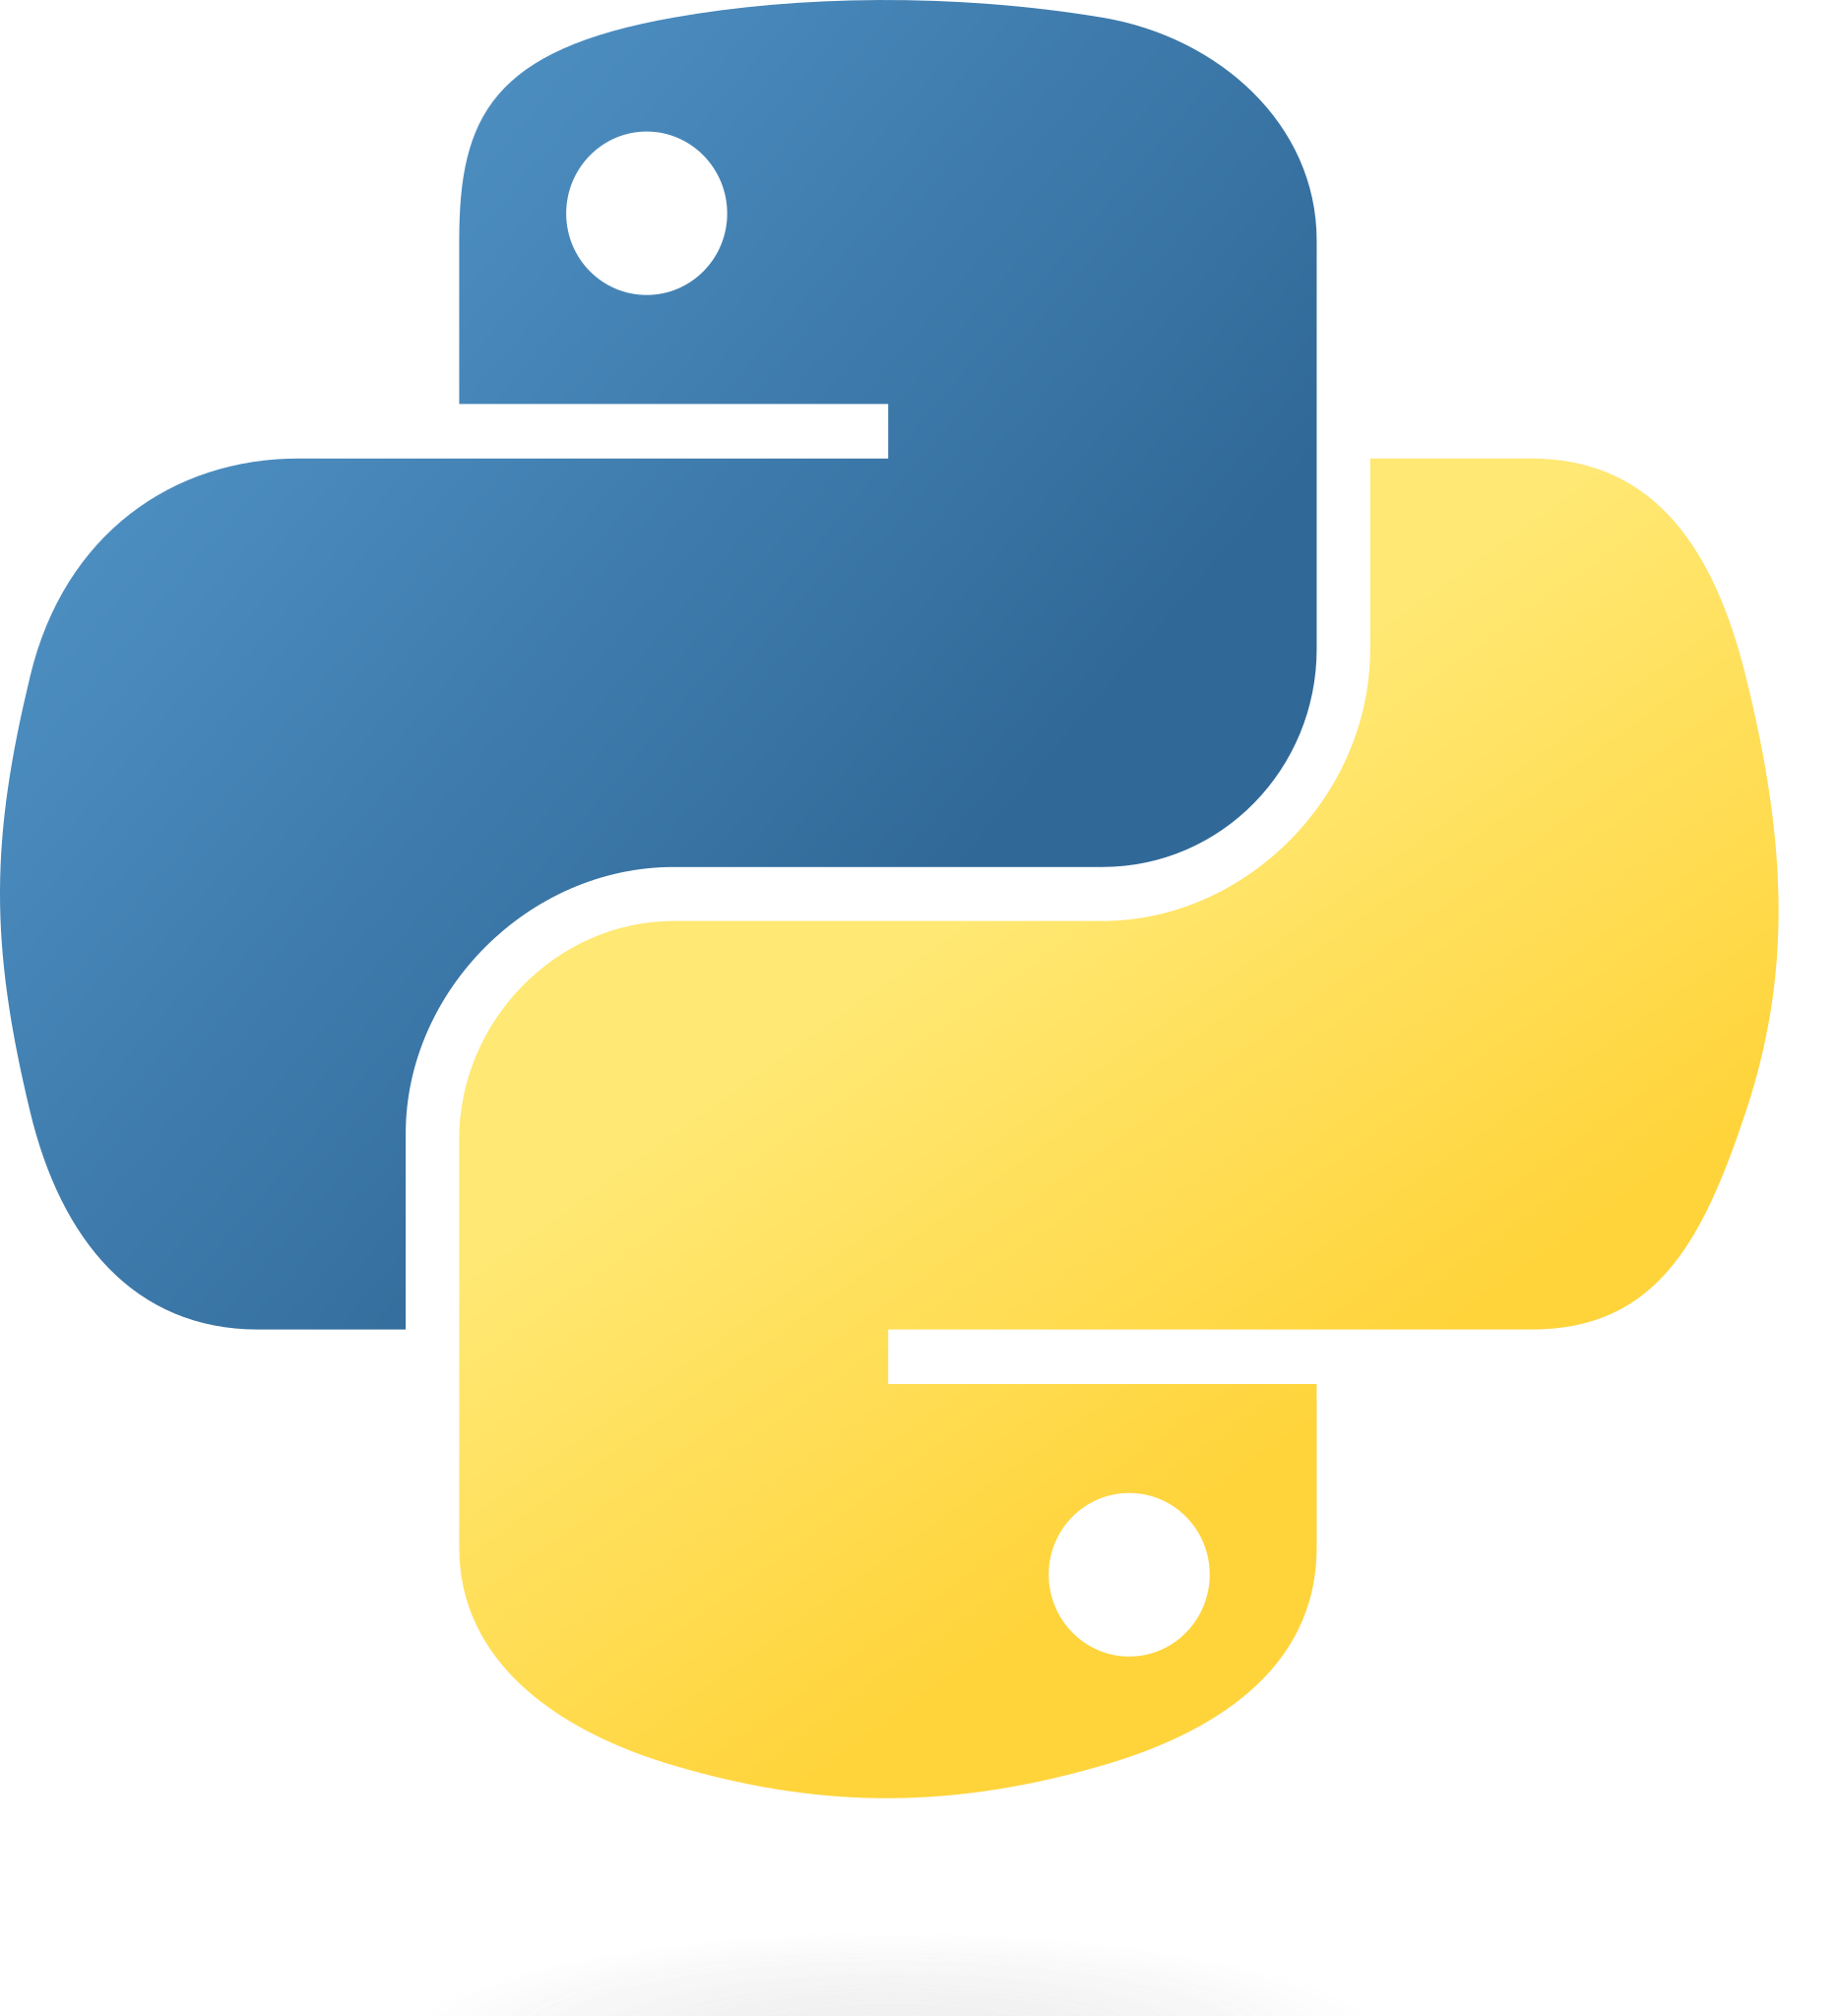 logo langage python